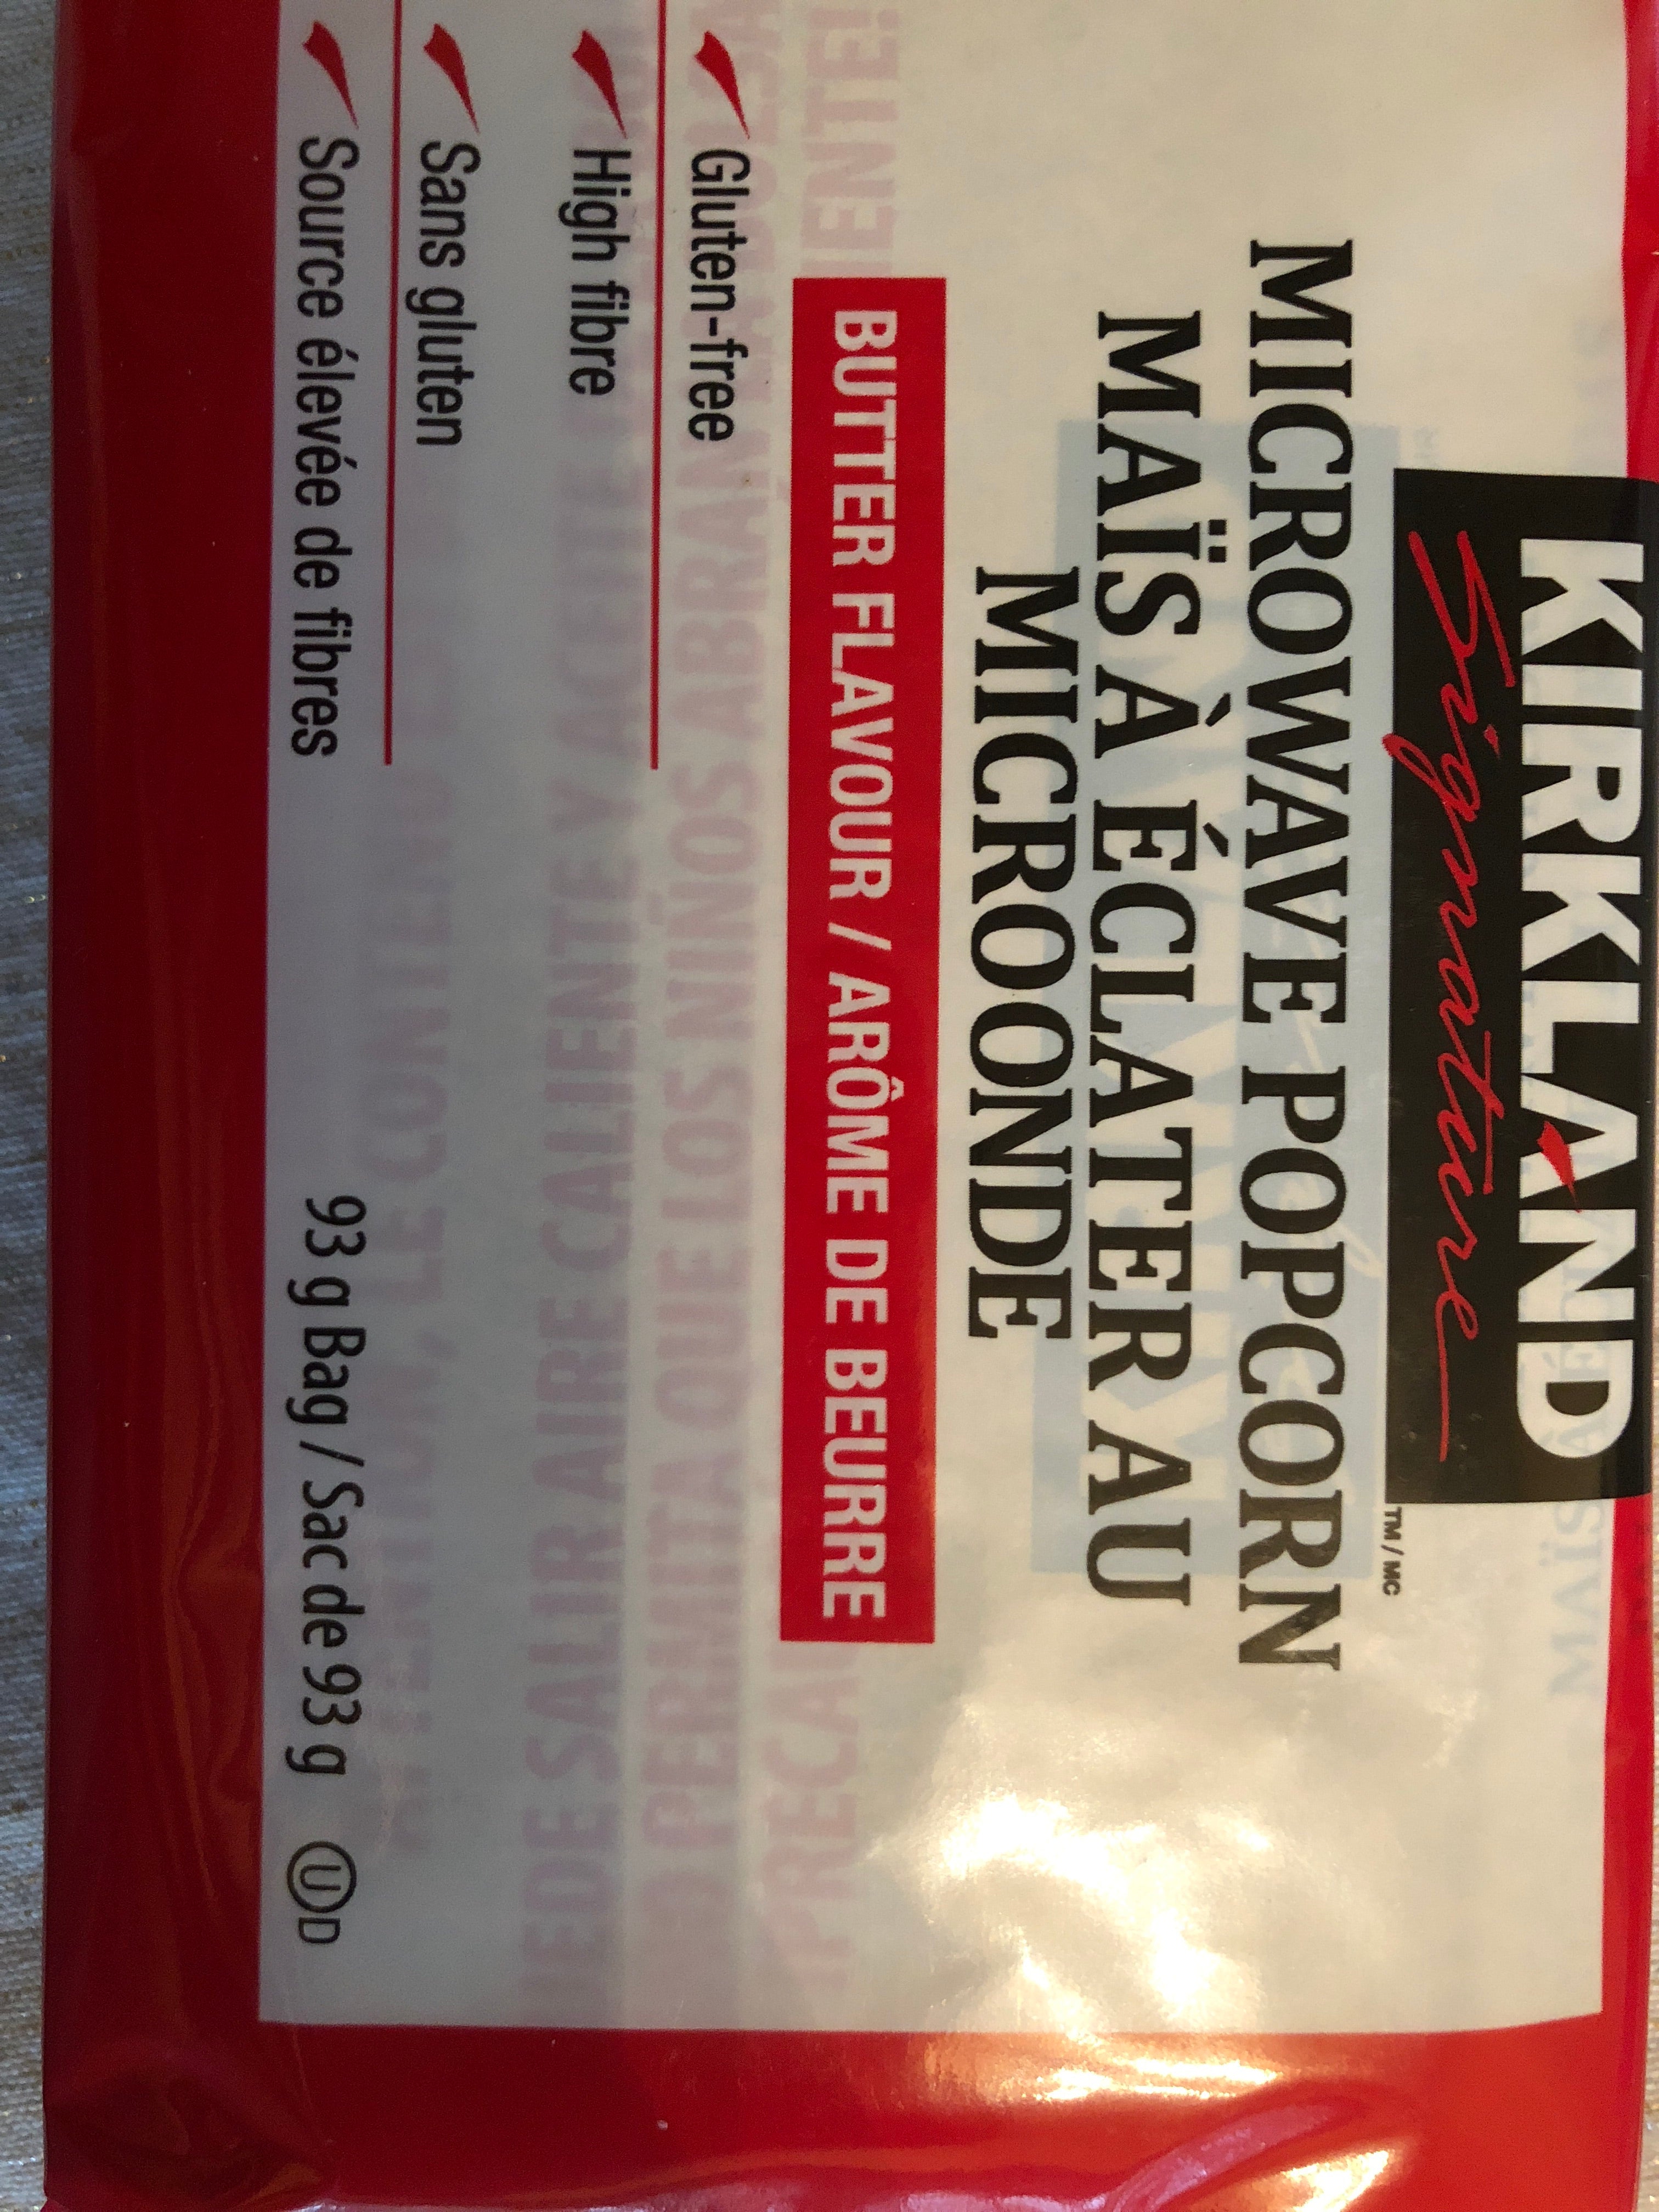 Popcorn - kirkland - 93 g pack each